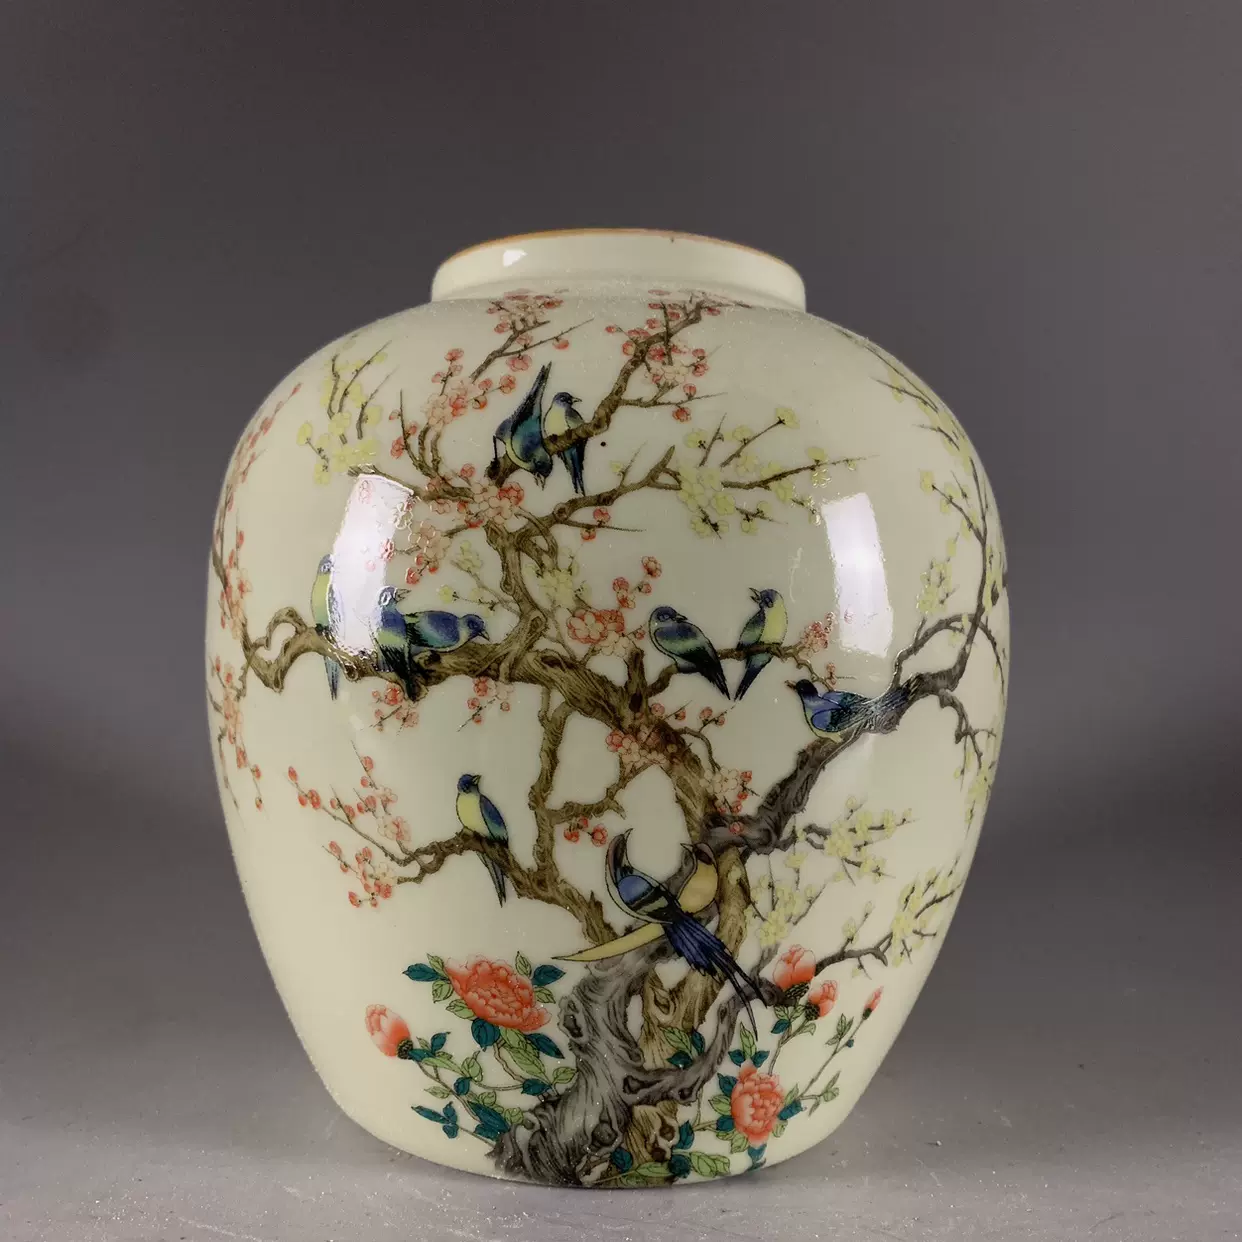 清乾隆年制粉彩石榴纹花瓶古董瓷器古玩收藏老物件摆件艺术品-Taobao